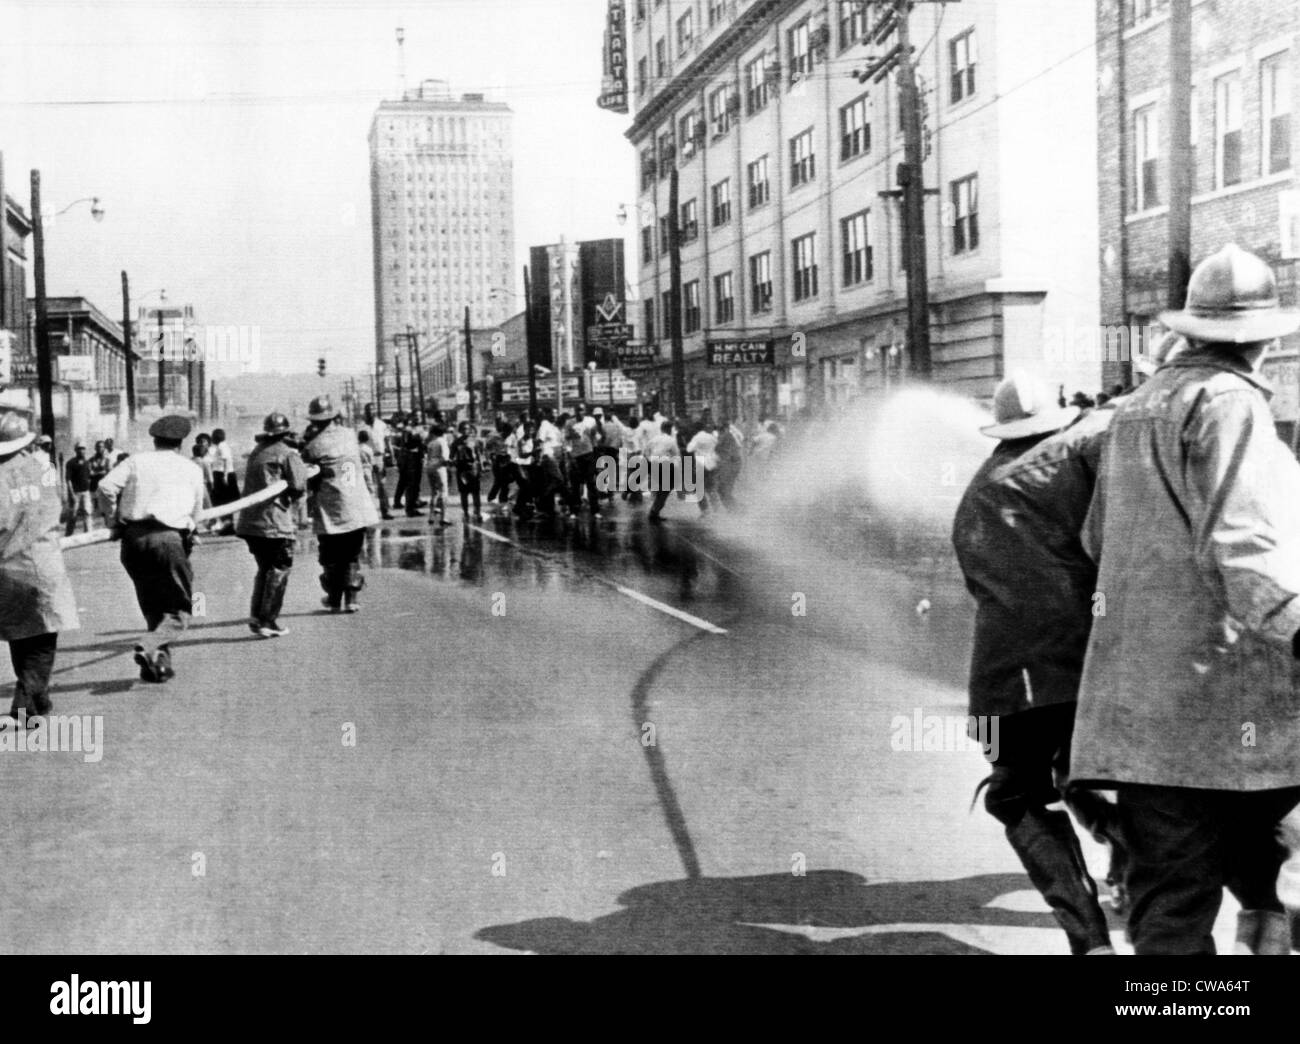 Los bomberos utilizar mangueras para dispersar una manifestación de los derechos civiles en Birmingham, 1963. Cortesía: CSU Archives/Everett Collection Foto de stock